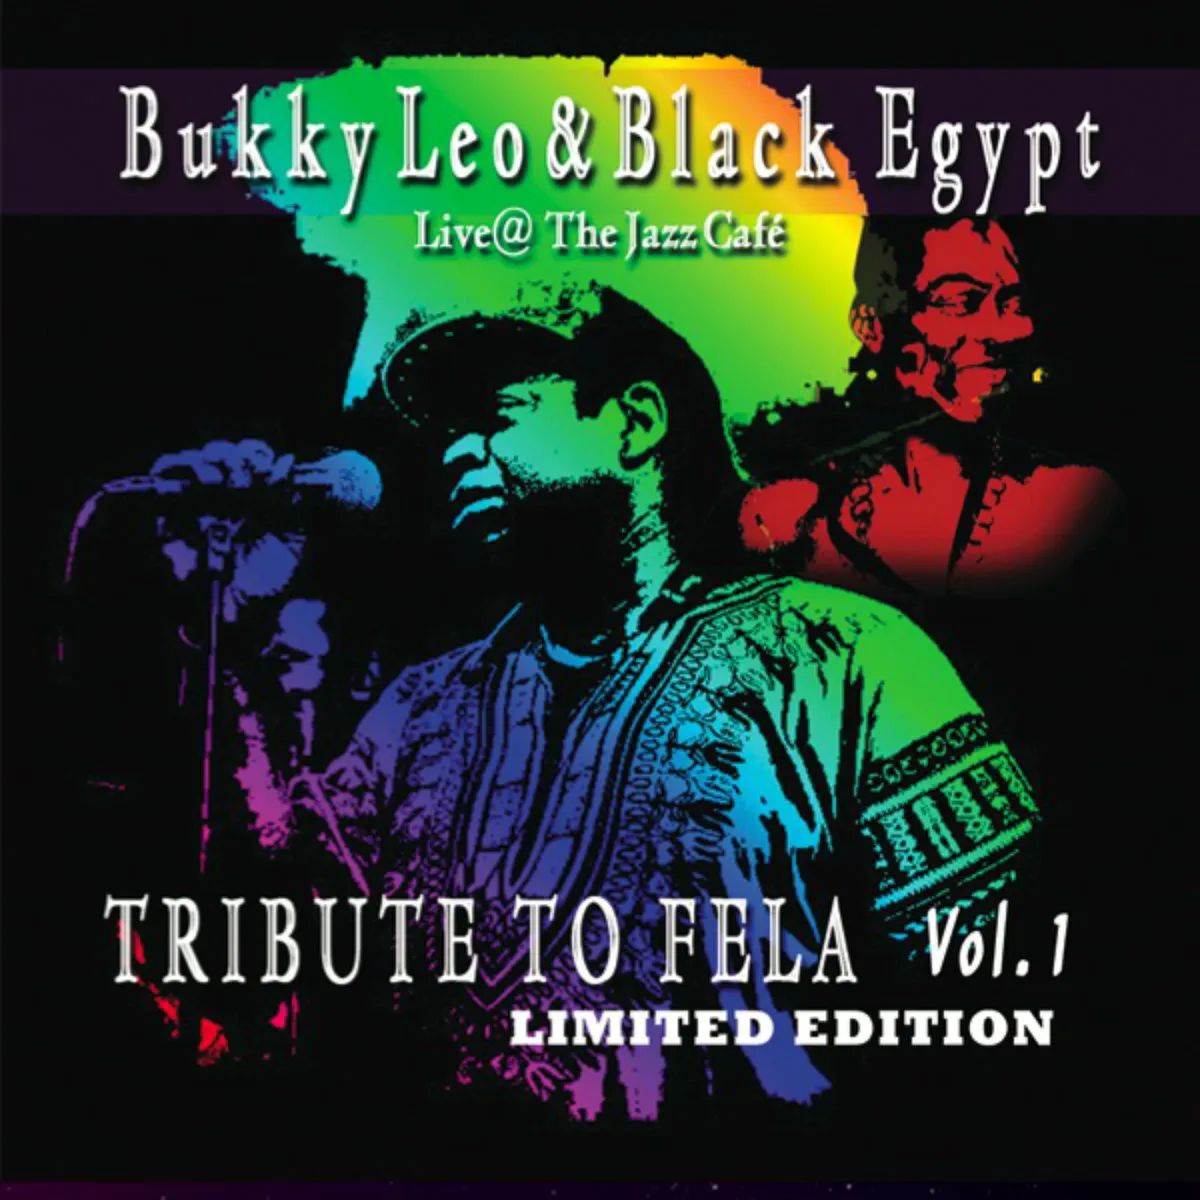 Bukky Leo & Black Egypt Live @ The Jazz Cafe Vol. 1